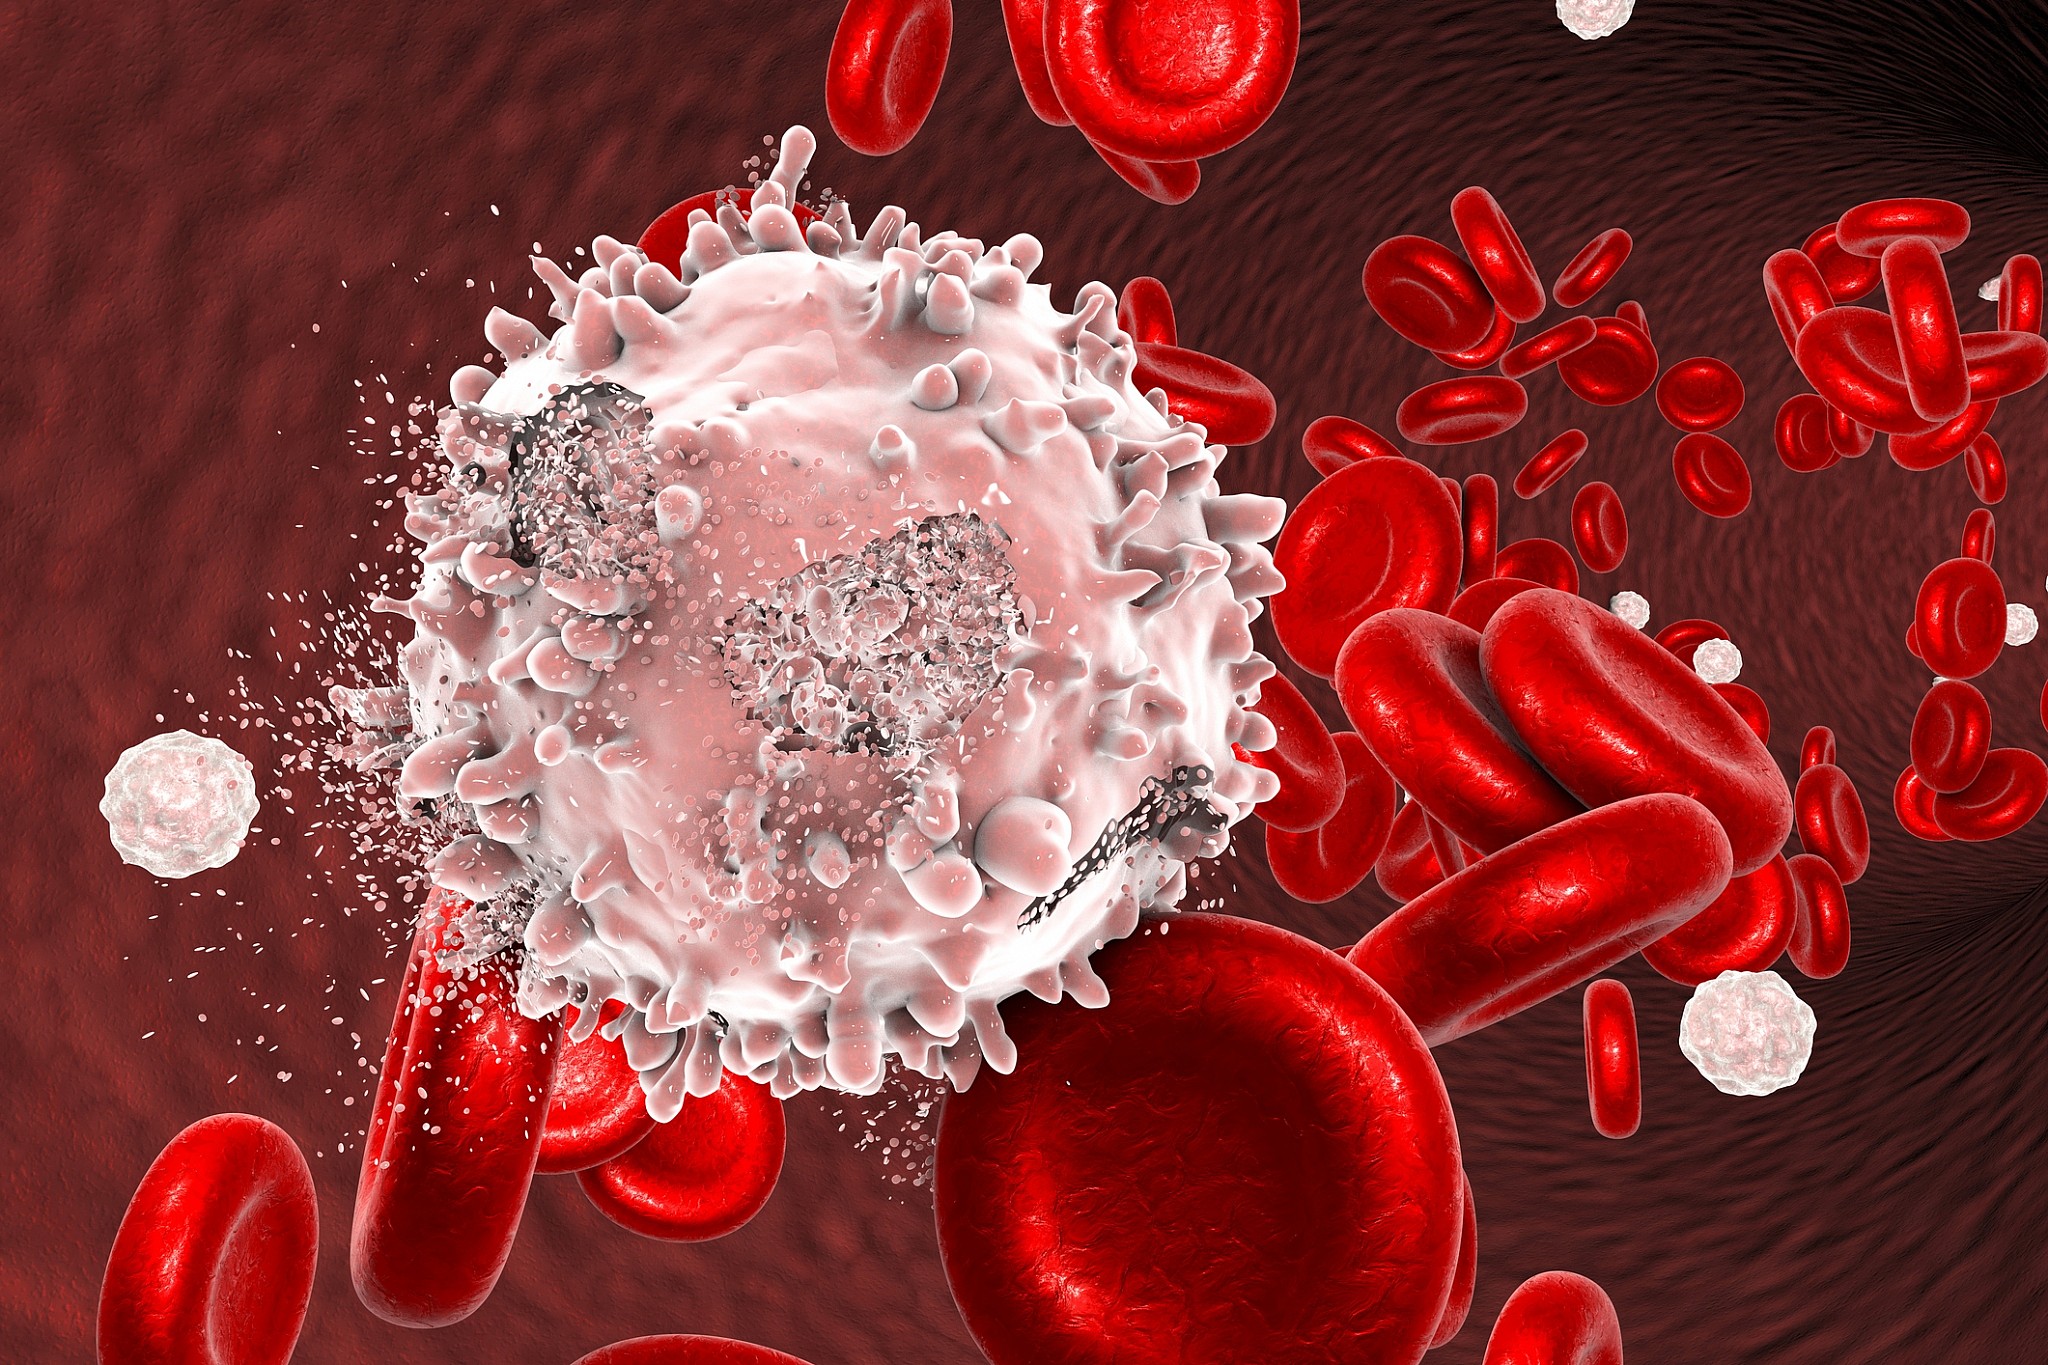 Ung thư máu cấp tính là gì và tác động của nó đến sống lượng sống của người mắc?
